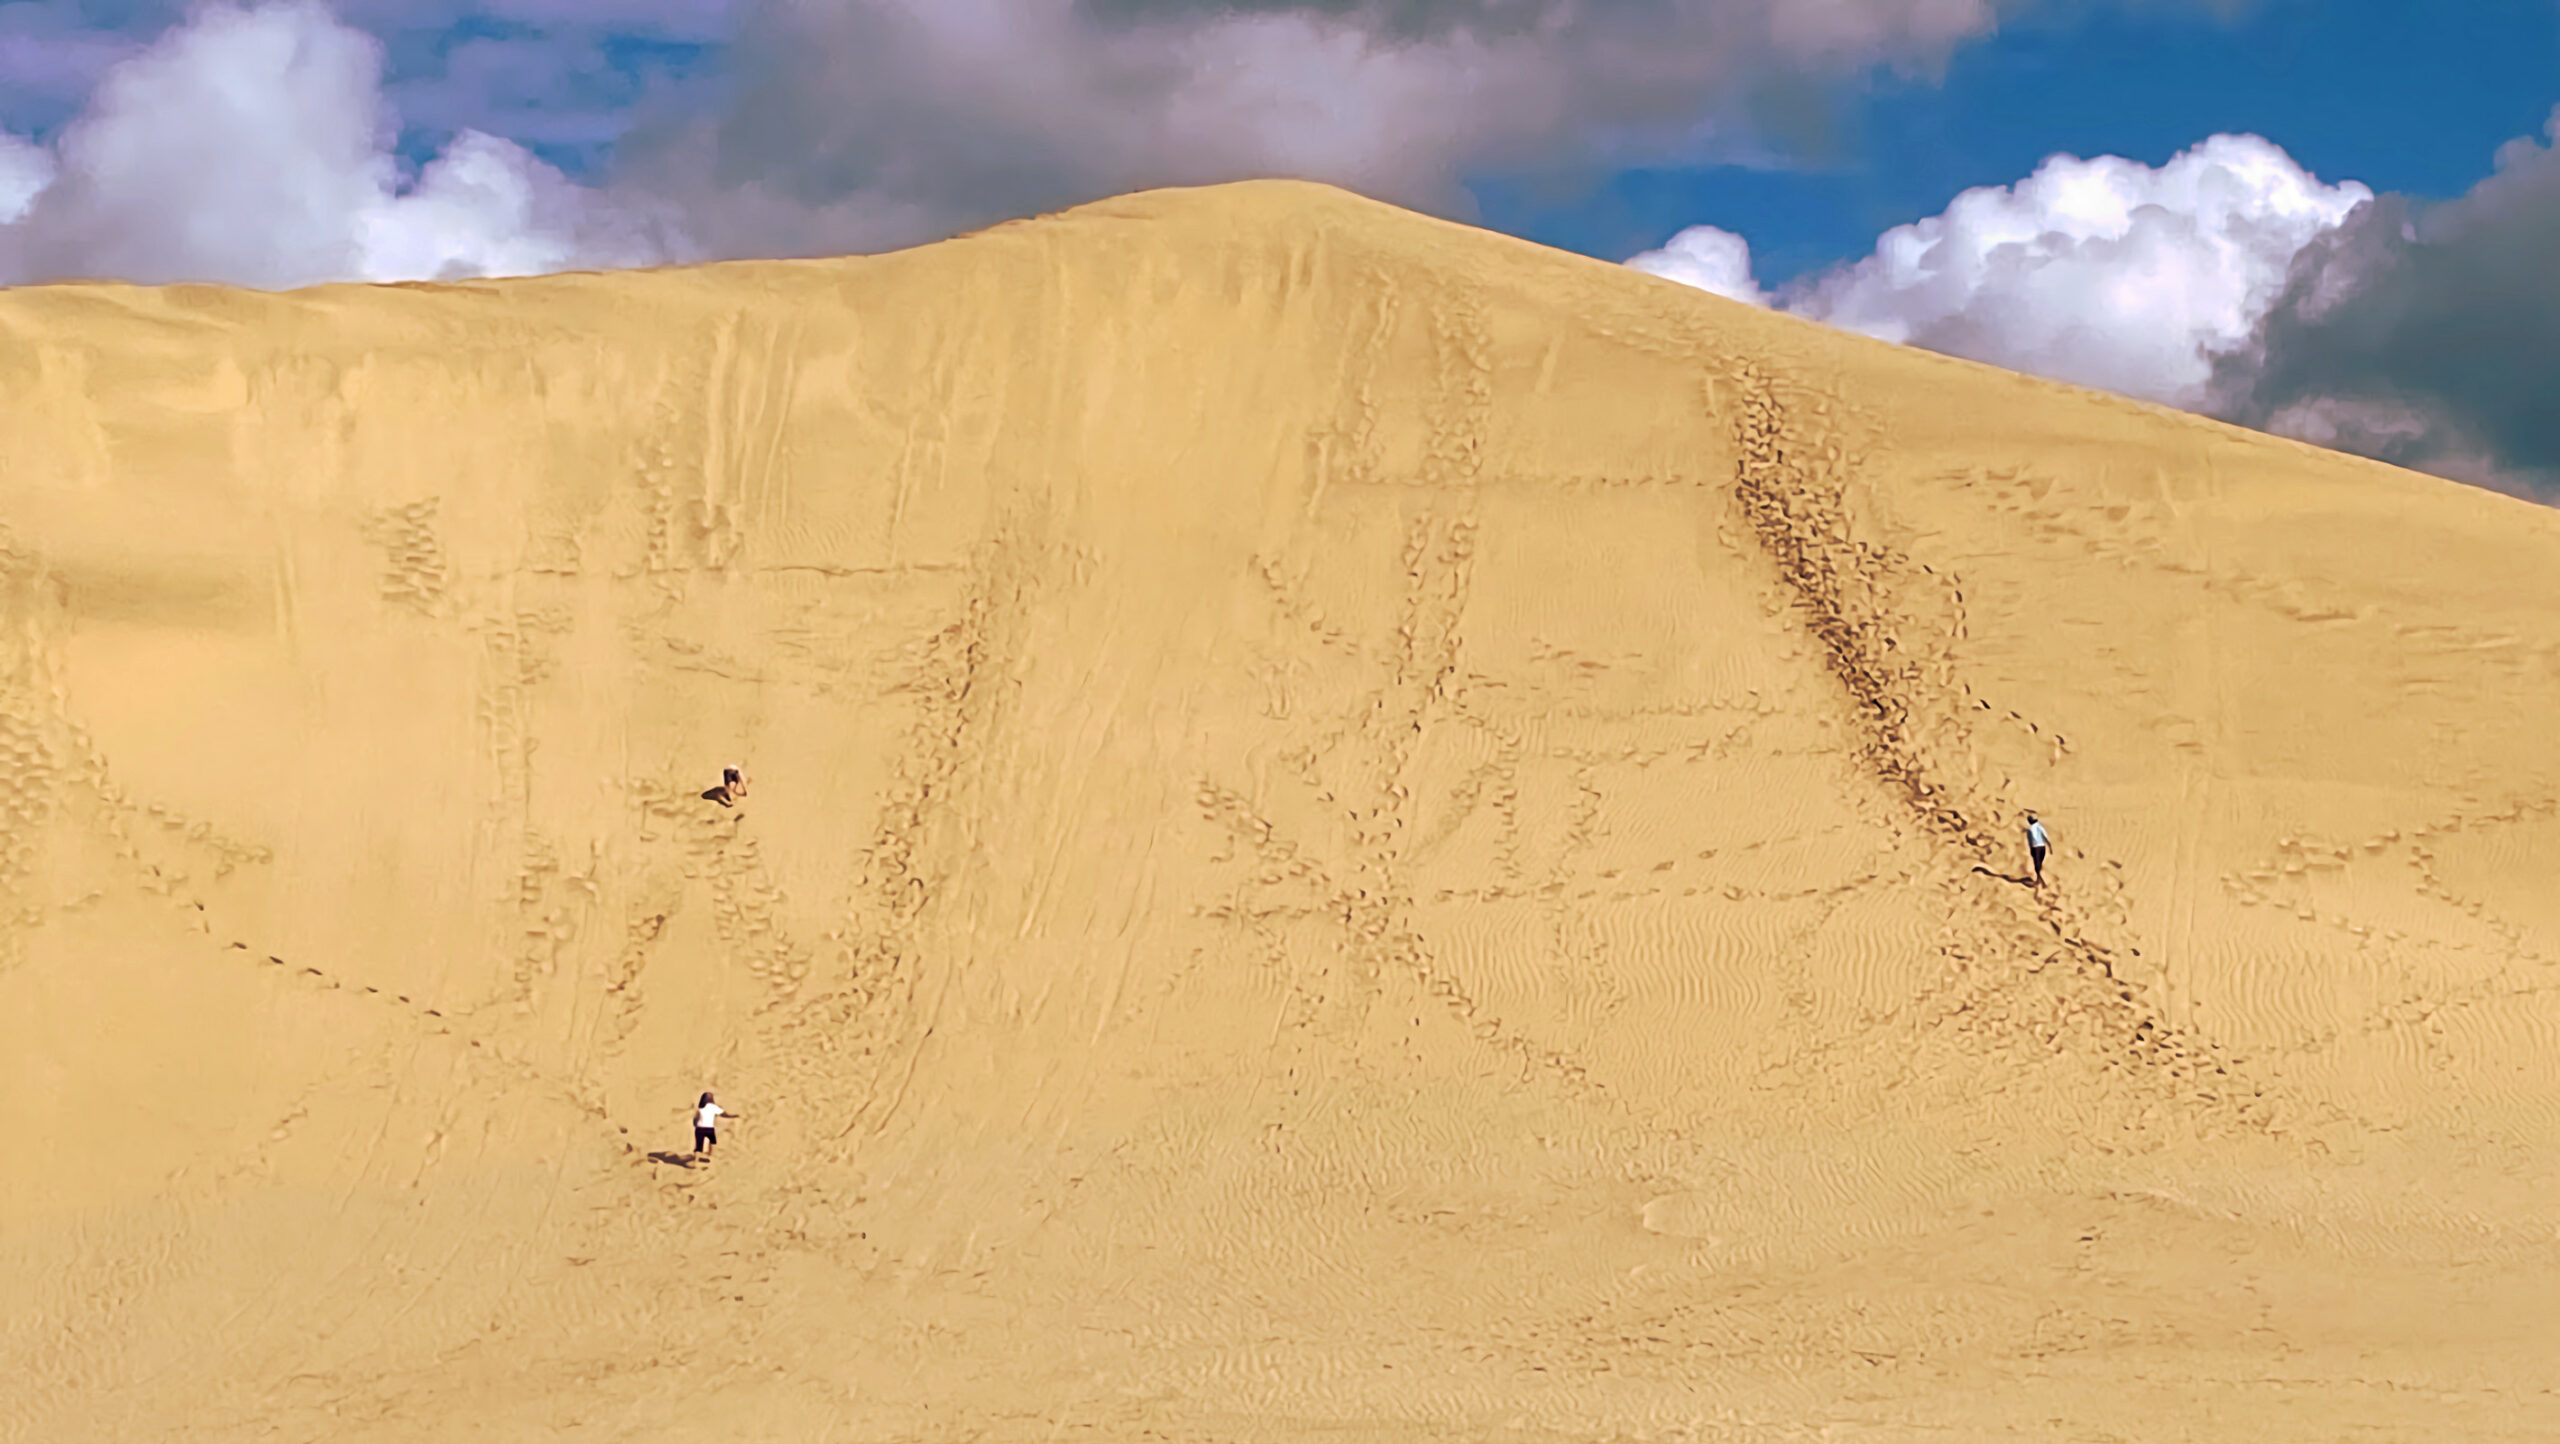 Turiştii care fac Sandboarding la Dunele Uriaşe de Nisip din Te Paki